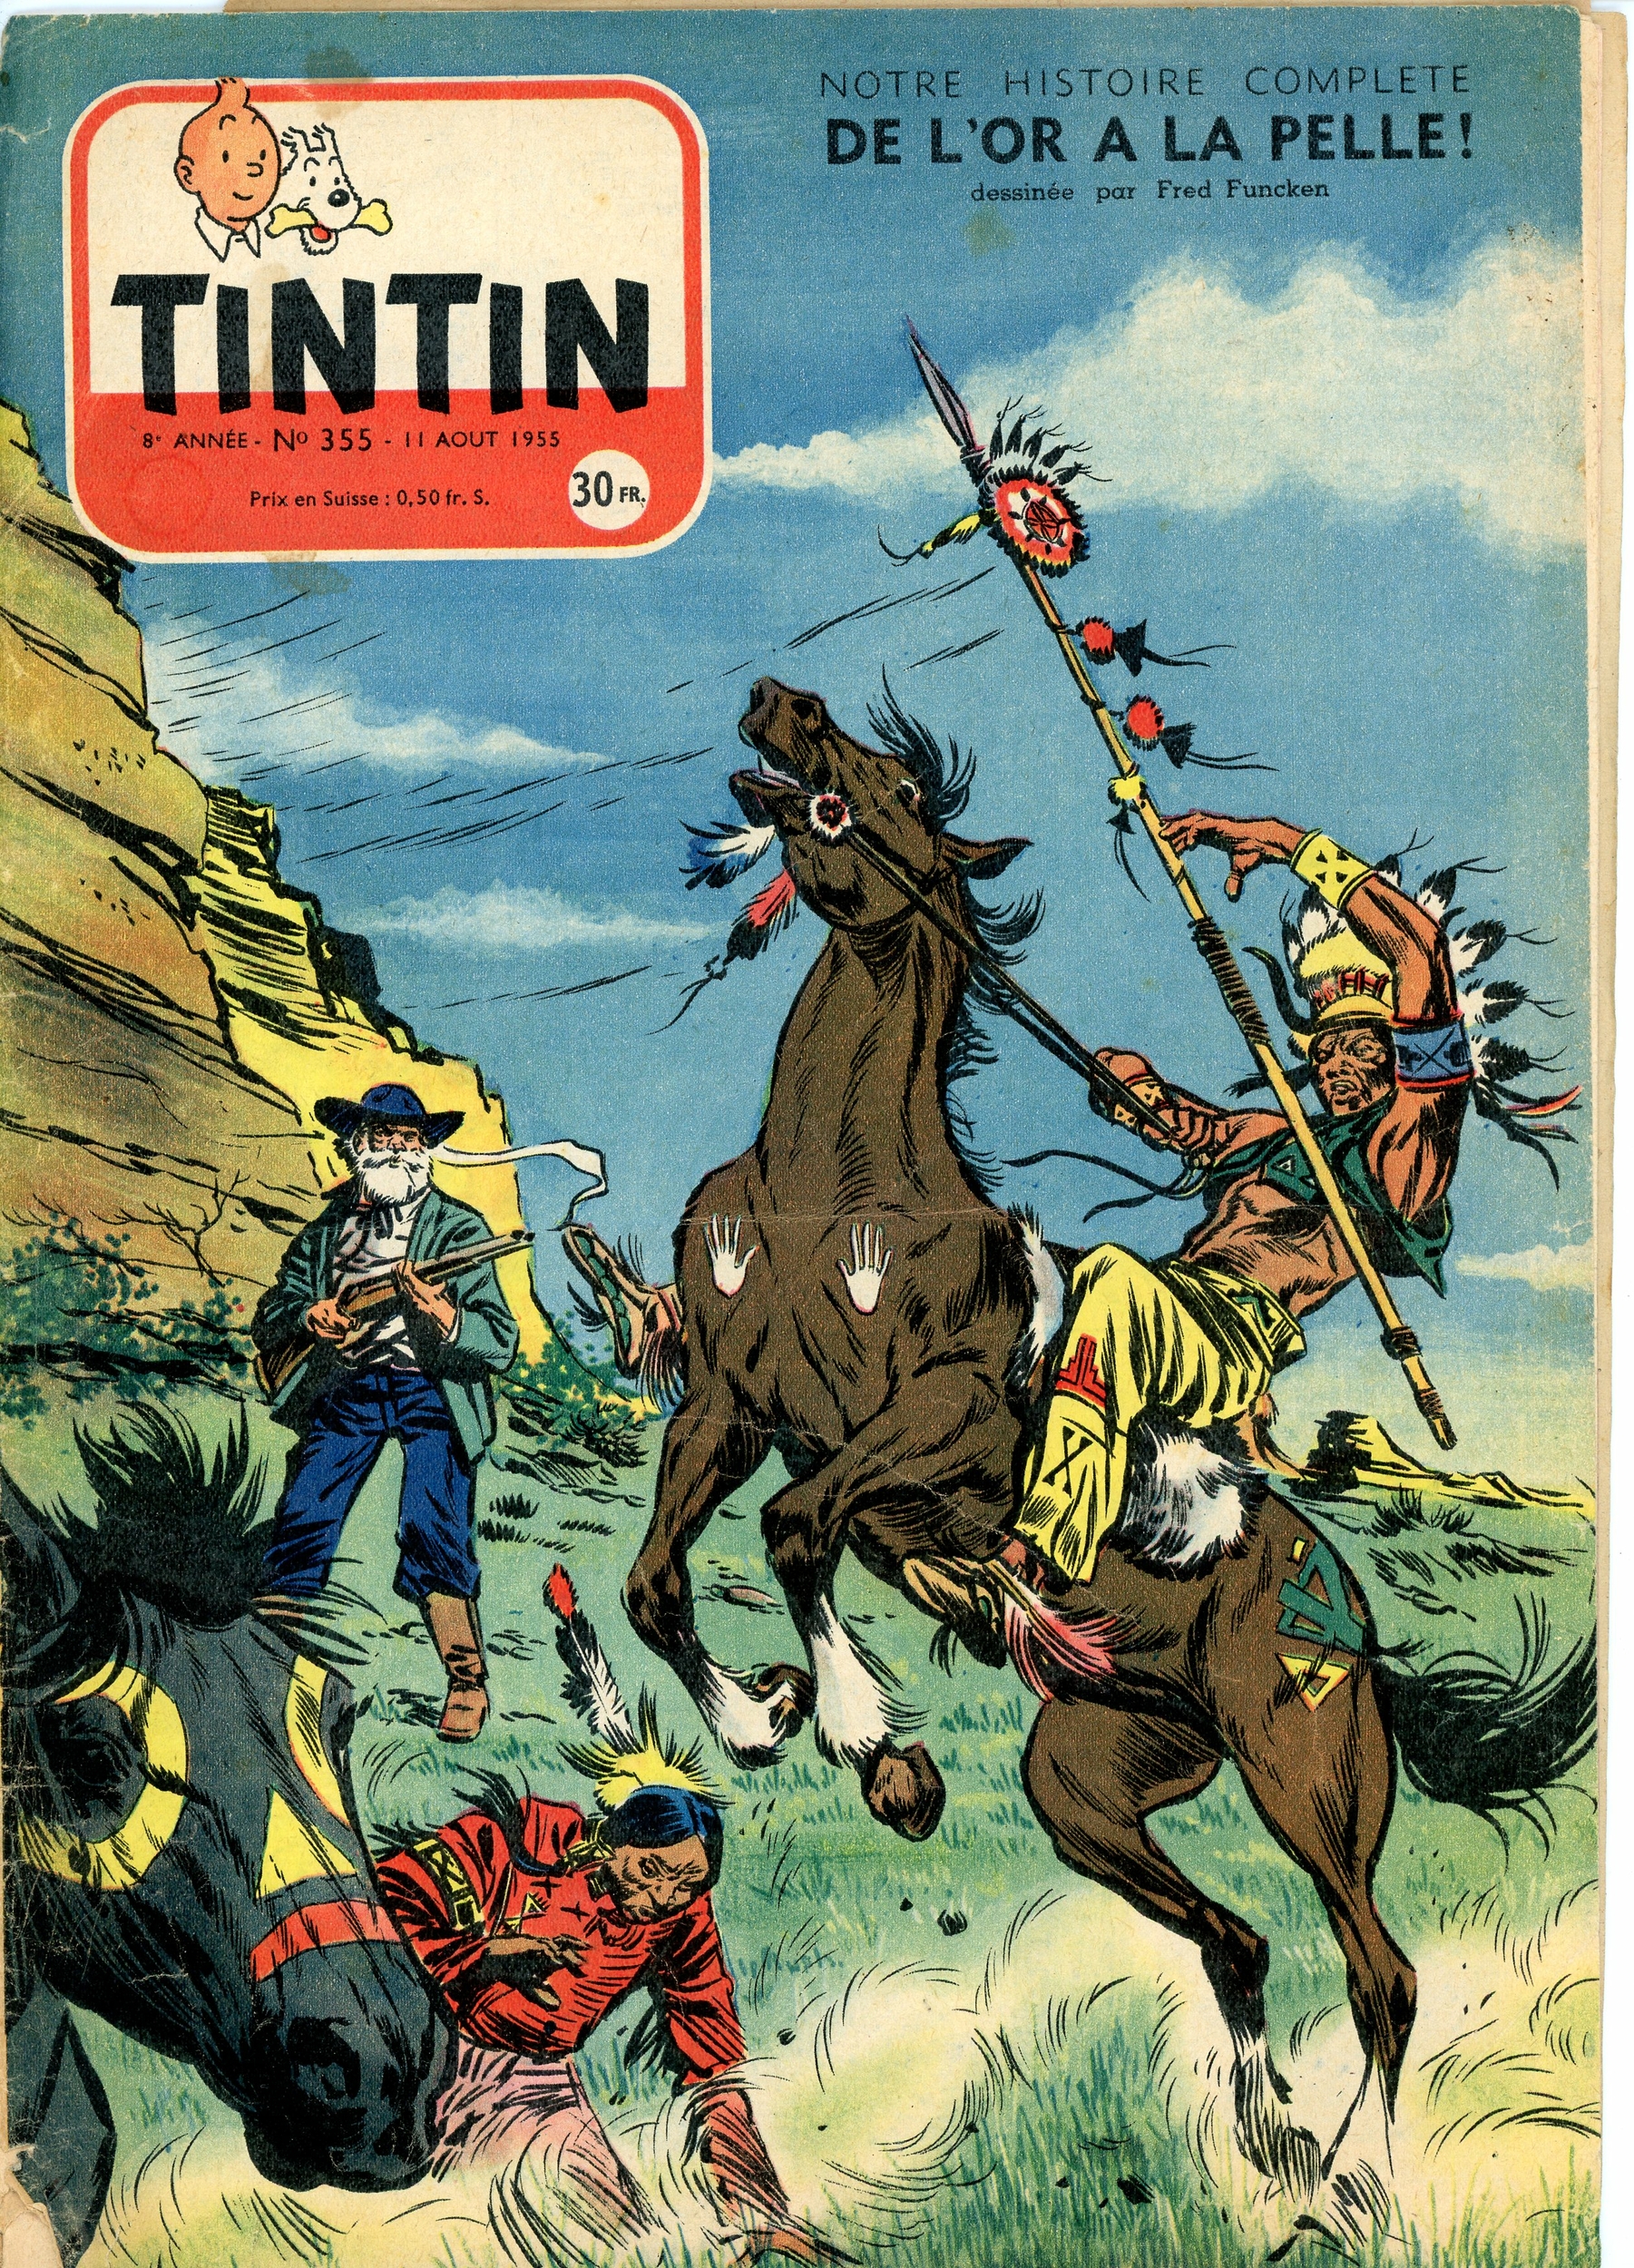 JOURNAL DE TINTIN n° 358 - TINTIN ACTUALITÉS 1955